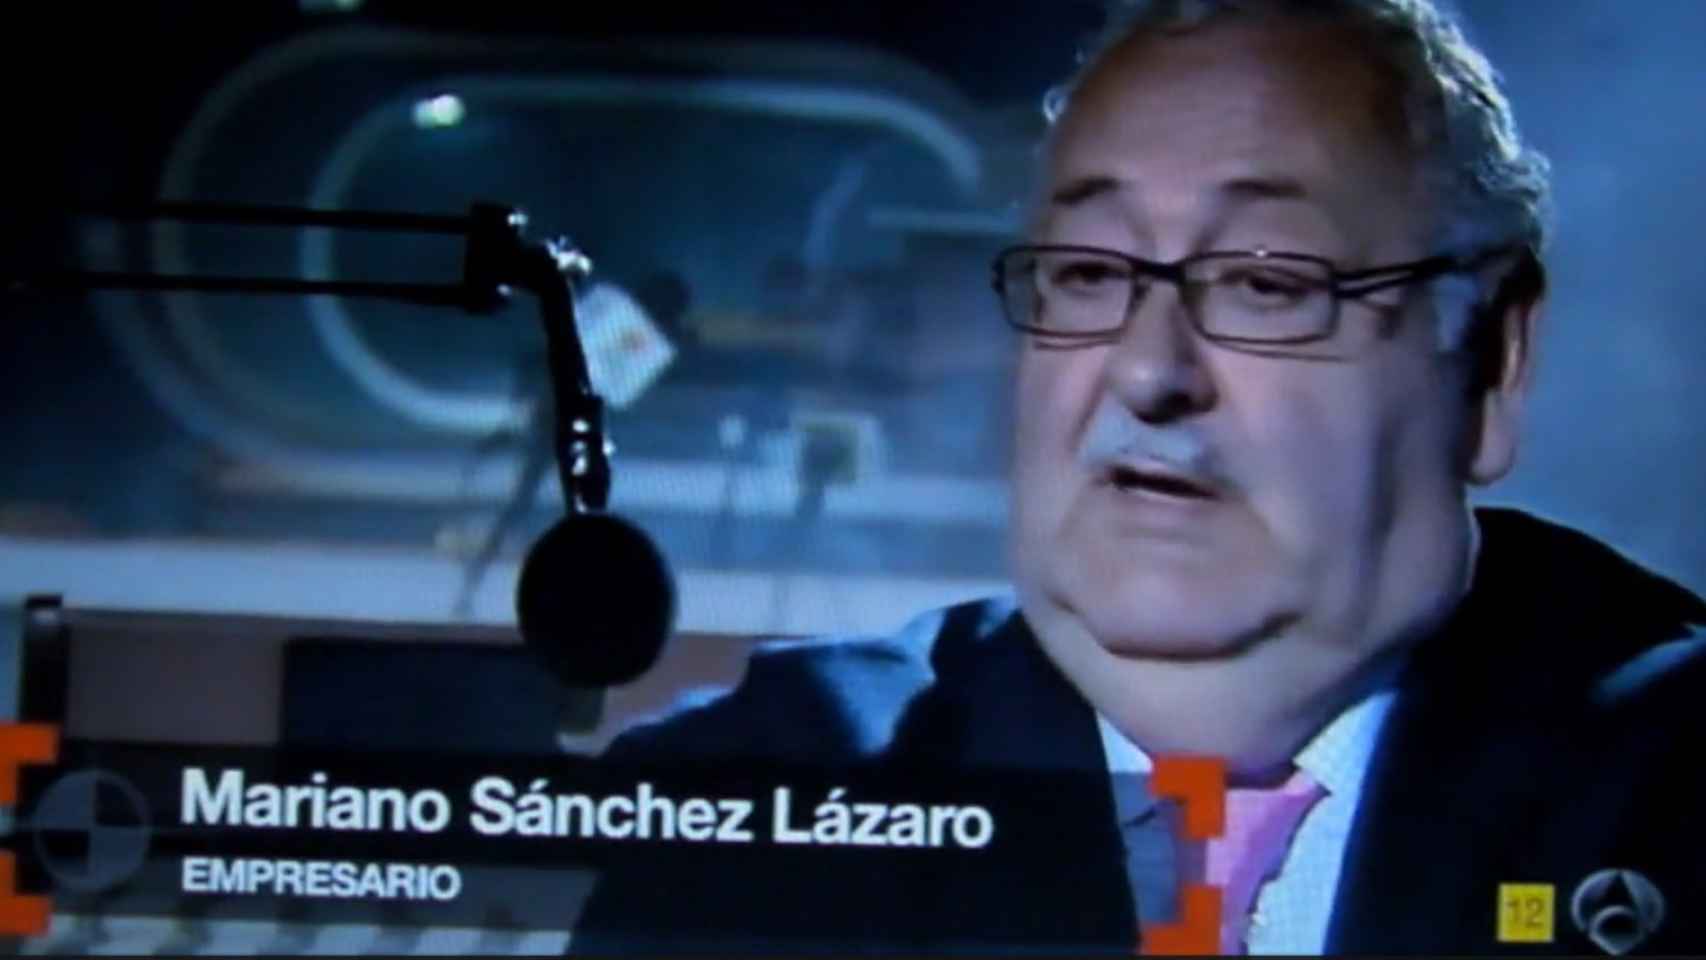 El empresario Mariano Lázaro apareció en un reportaje de Equipo de investigación en Antena 3.